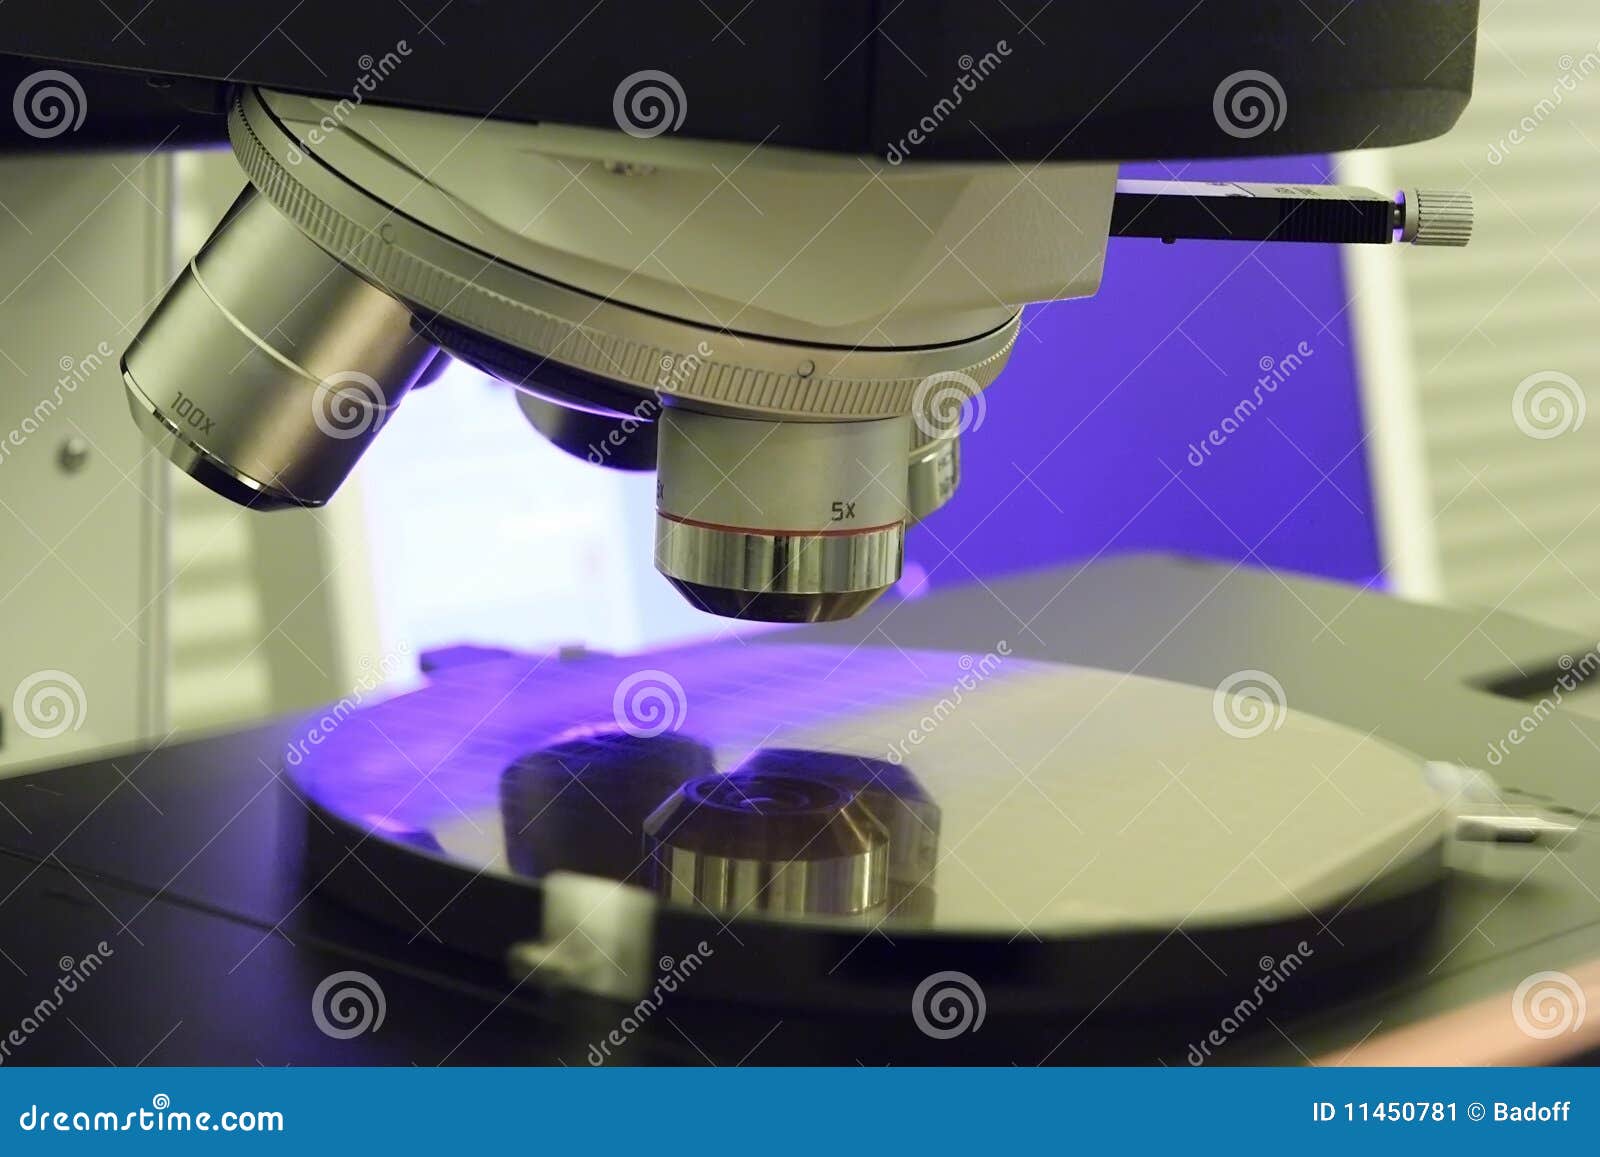 microscopy wafer